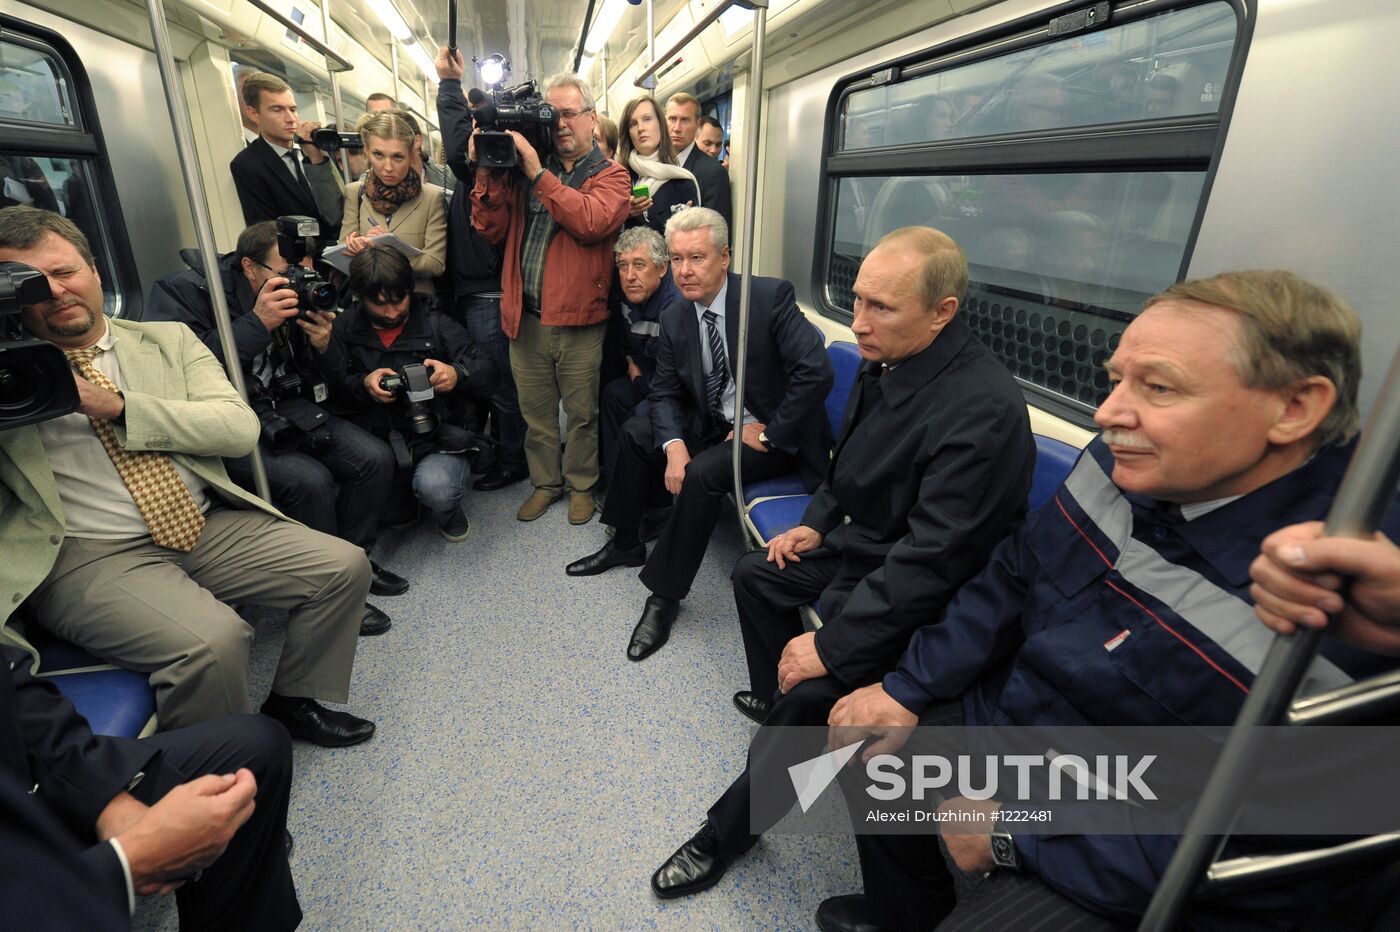 Vladimir Putin, Sergei Sobyanin visit new metro station